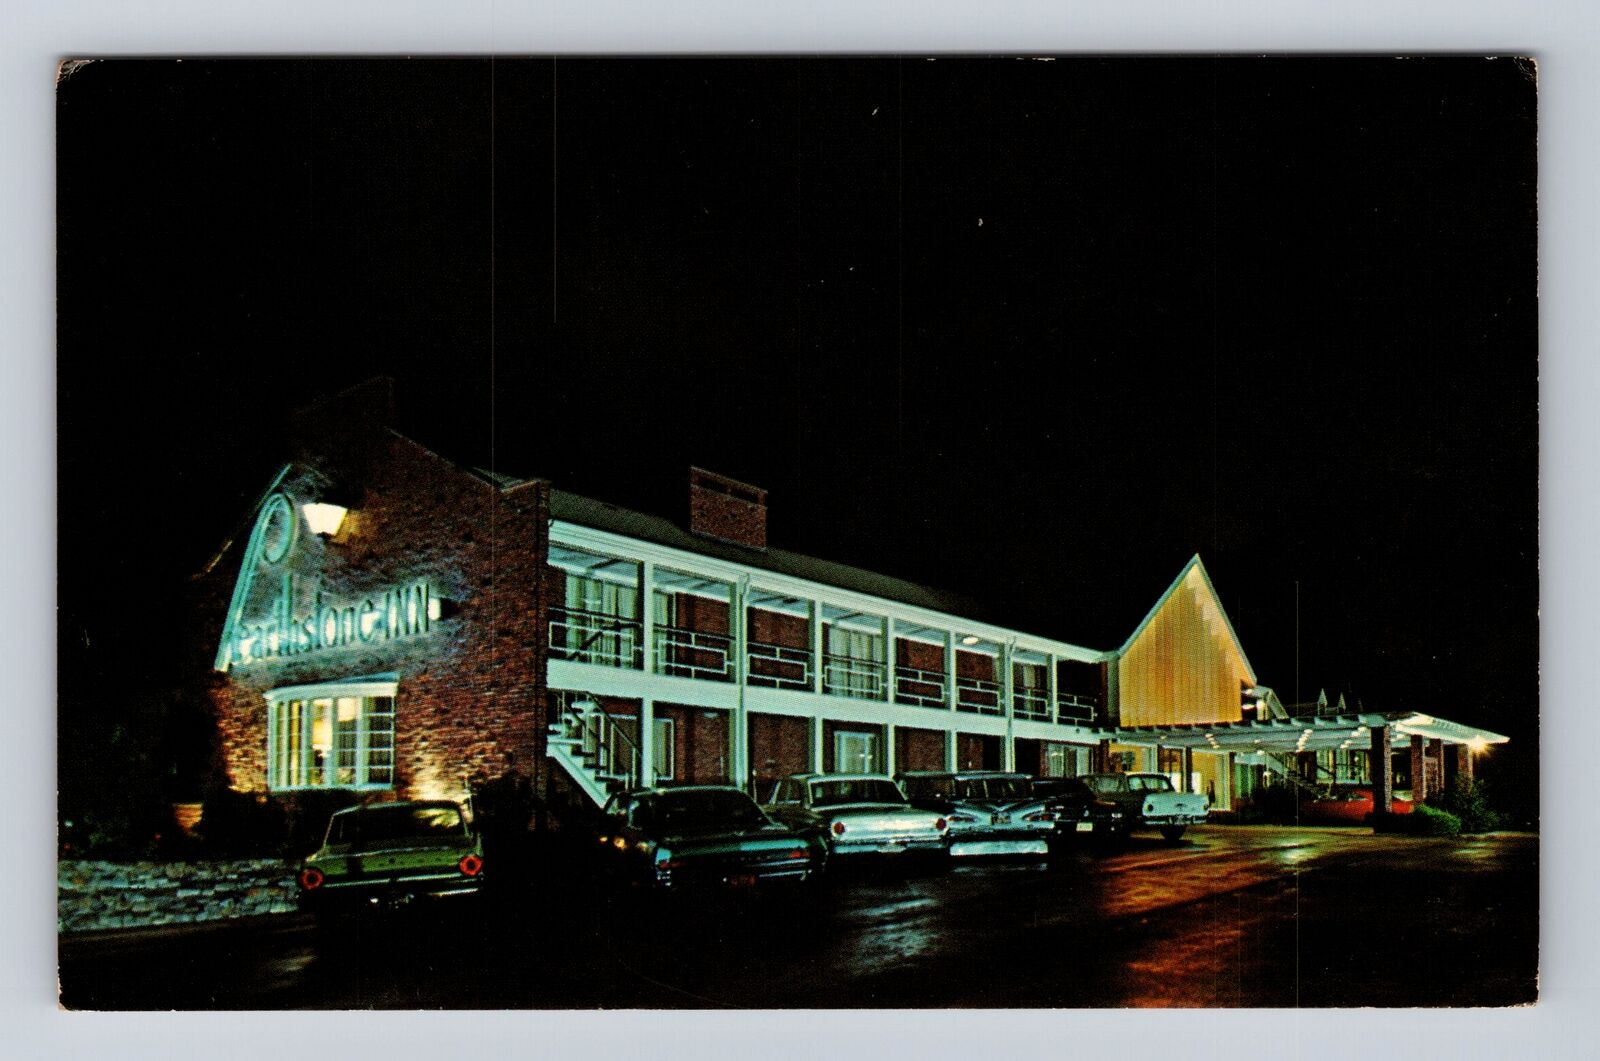 Seekonk MA-Massachusetts, Hearthstone Motor Inn, Advertisement Vintage Postcard